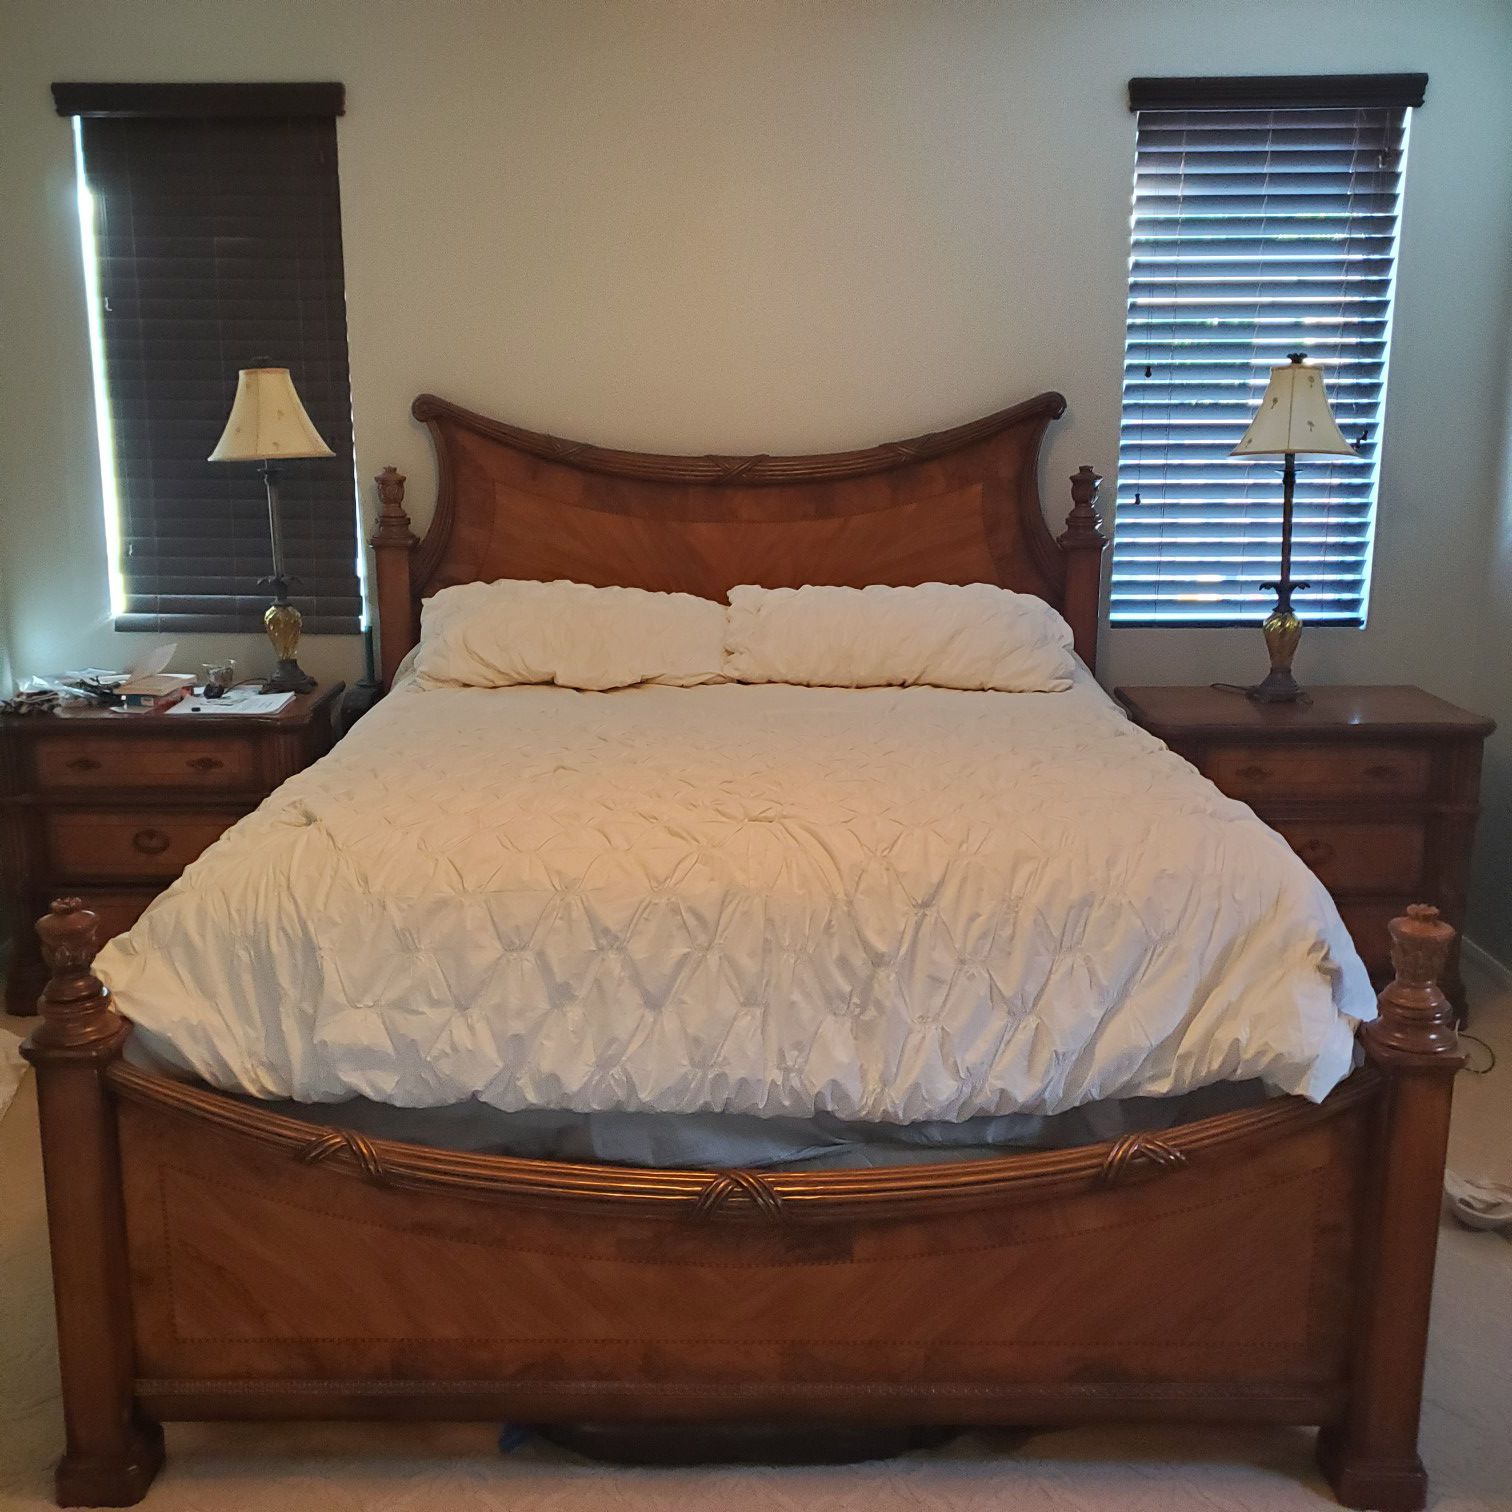 Solid wood king size bedroom set